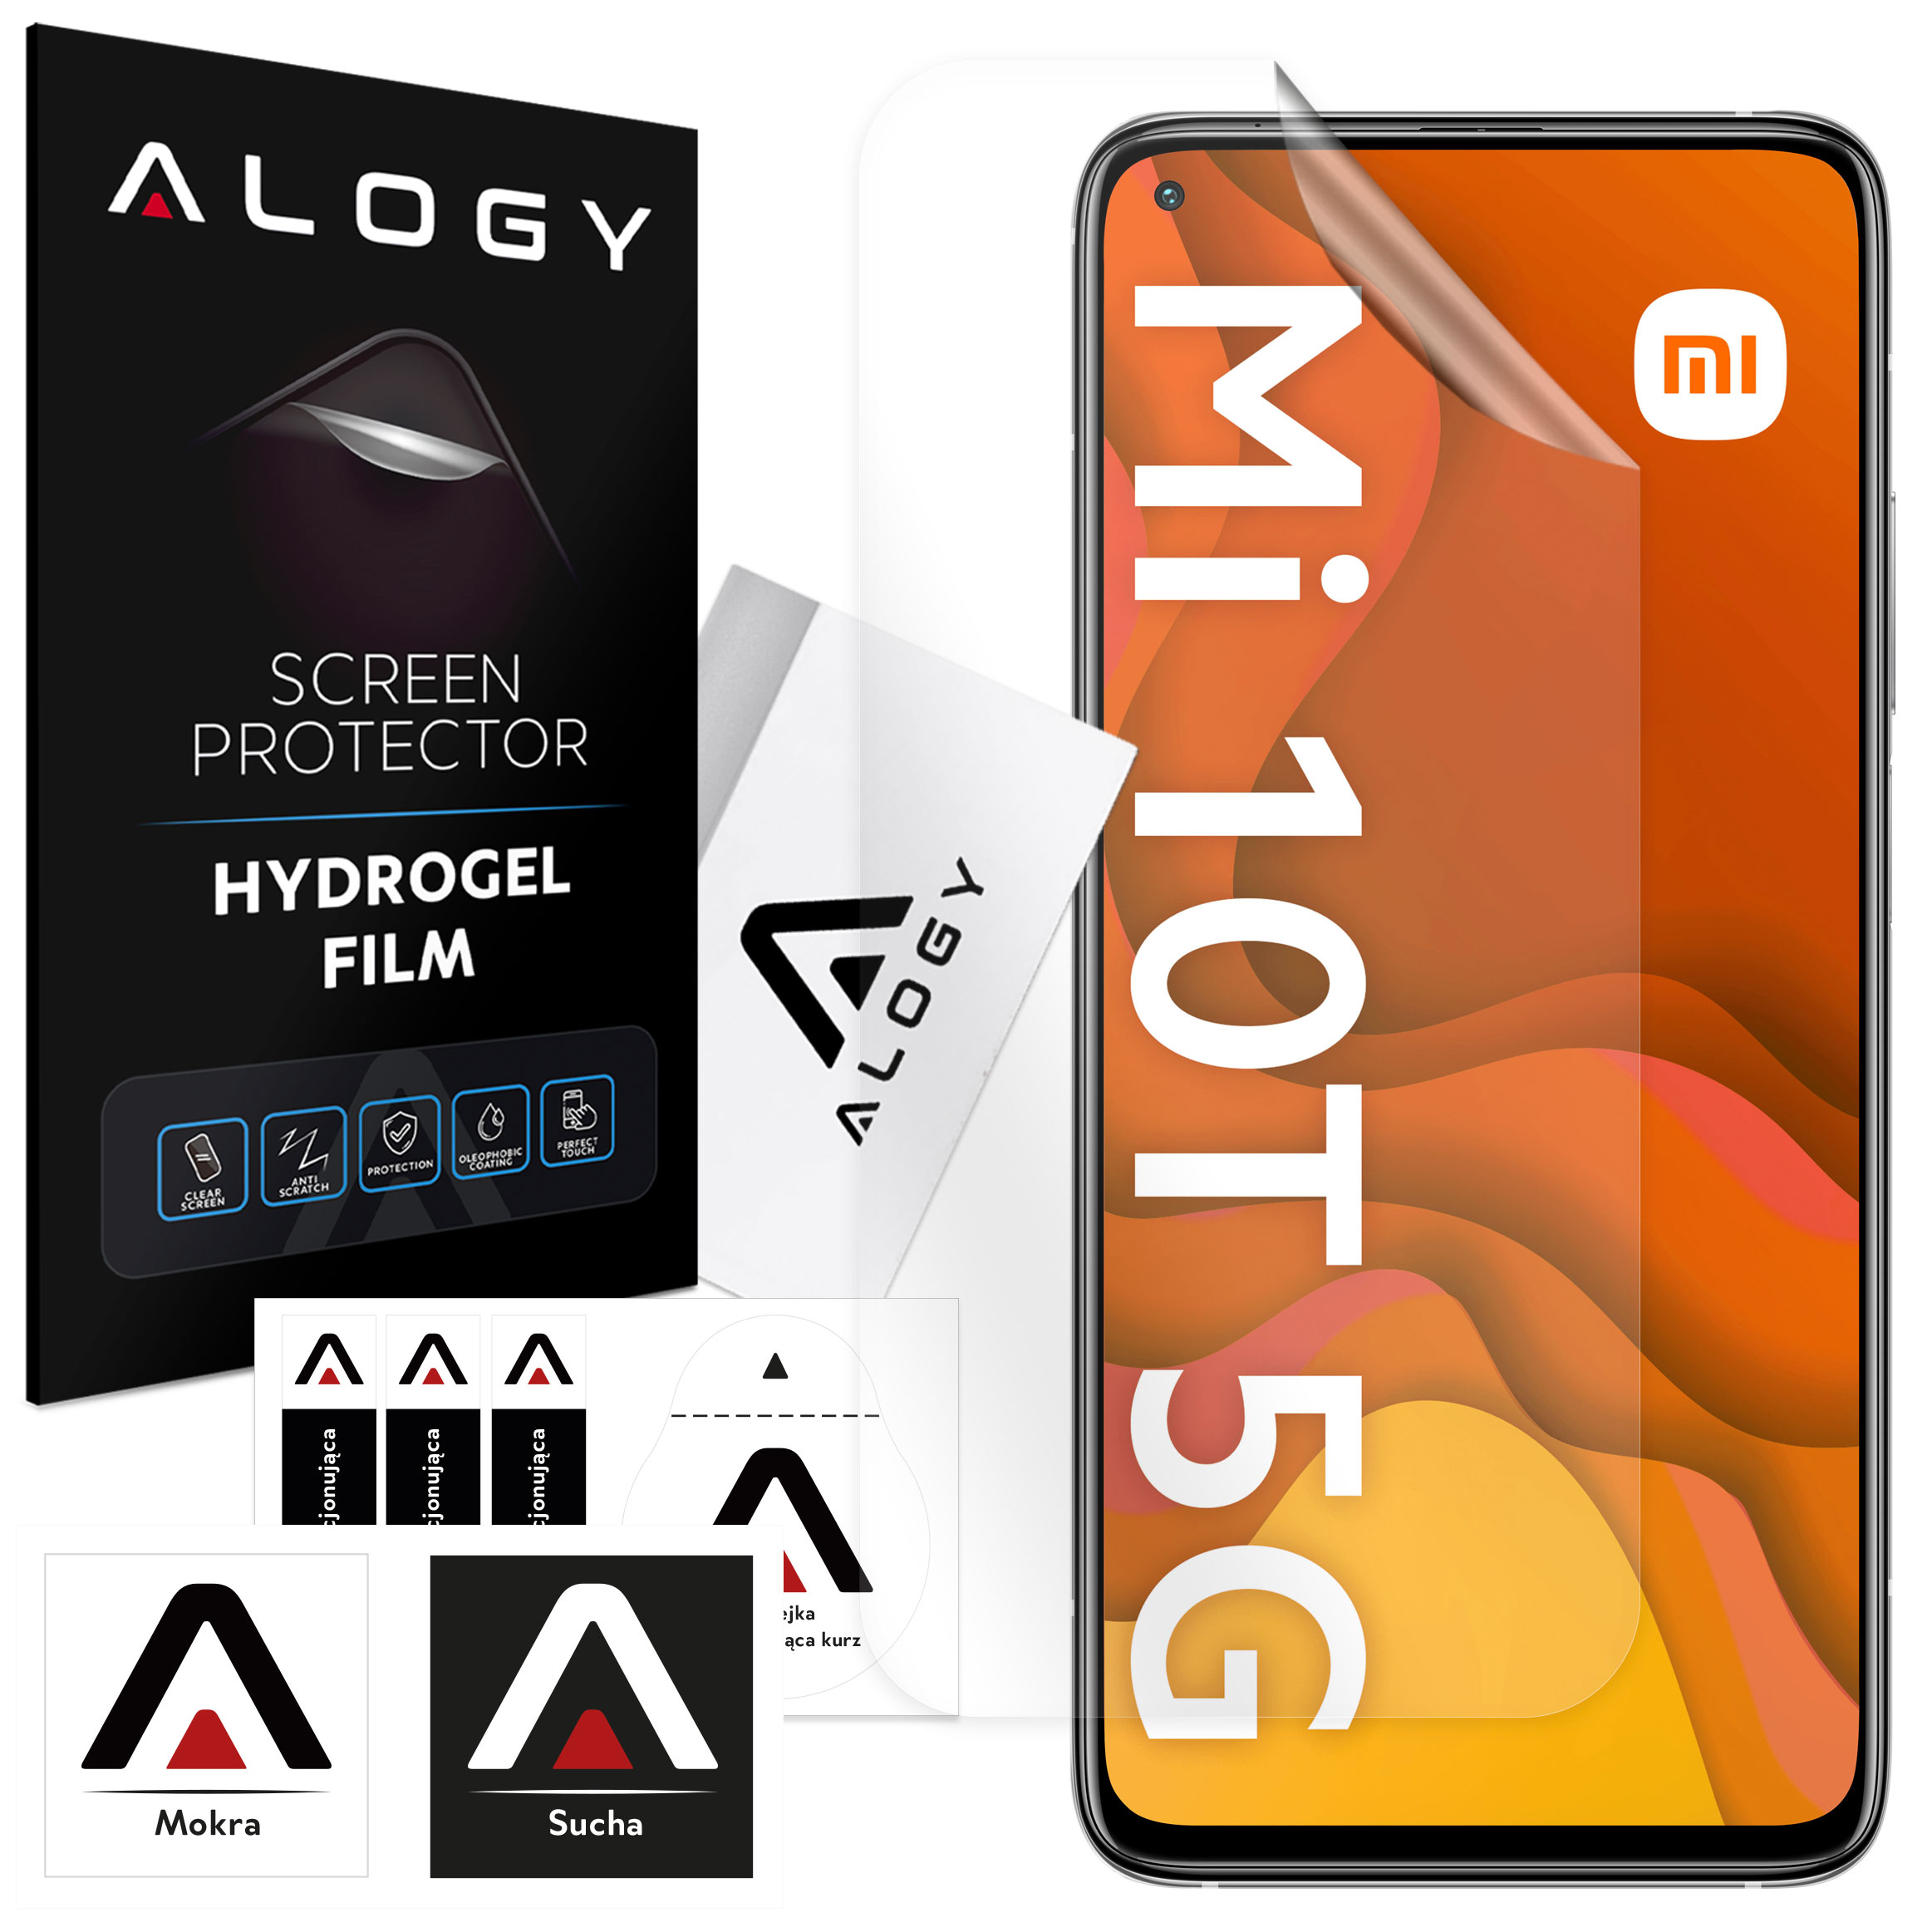 Hydrogelfolie für Xiaomi Mi 10T, schützender Telefonbildschirm, Alogy Hydrogelfolie